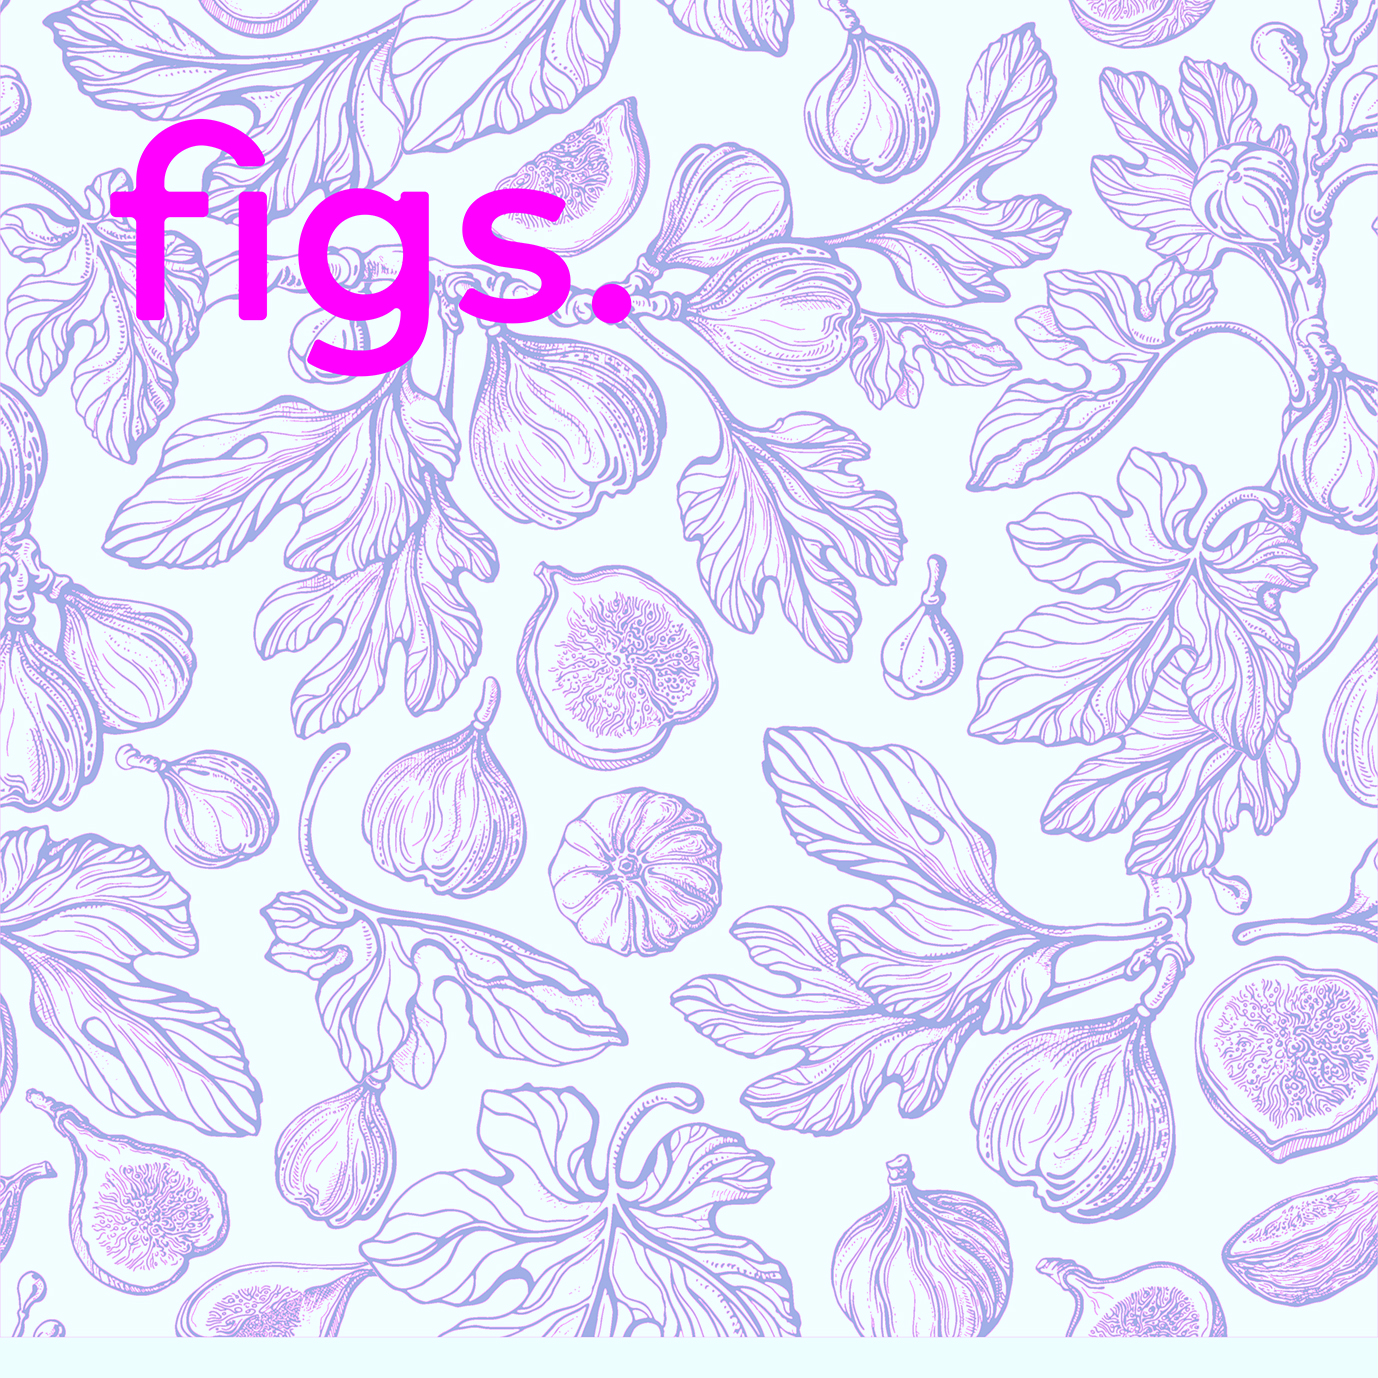 figs roze2